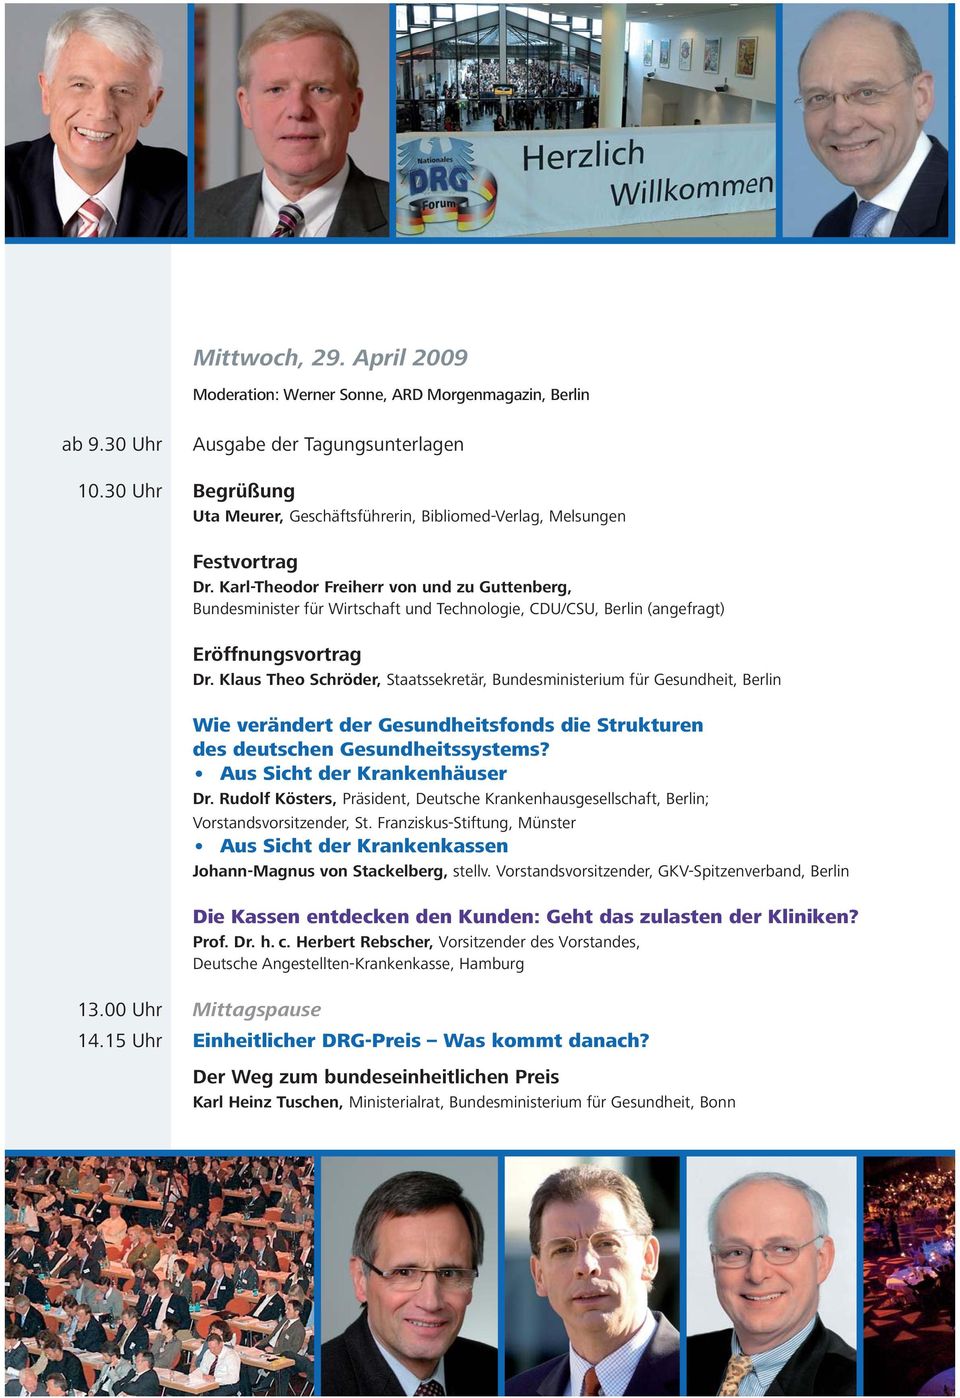 (angefragt) Eröffnungsvortrag Klaus Theo Schröder, Staatssekretär, Bundesministerium für Gesundheit, Berlin Wie verändert der Gesundheitsfonds die Strukturen des deutschen Gesundheitssystems?